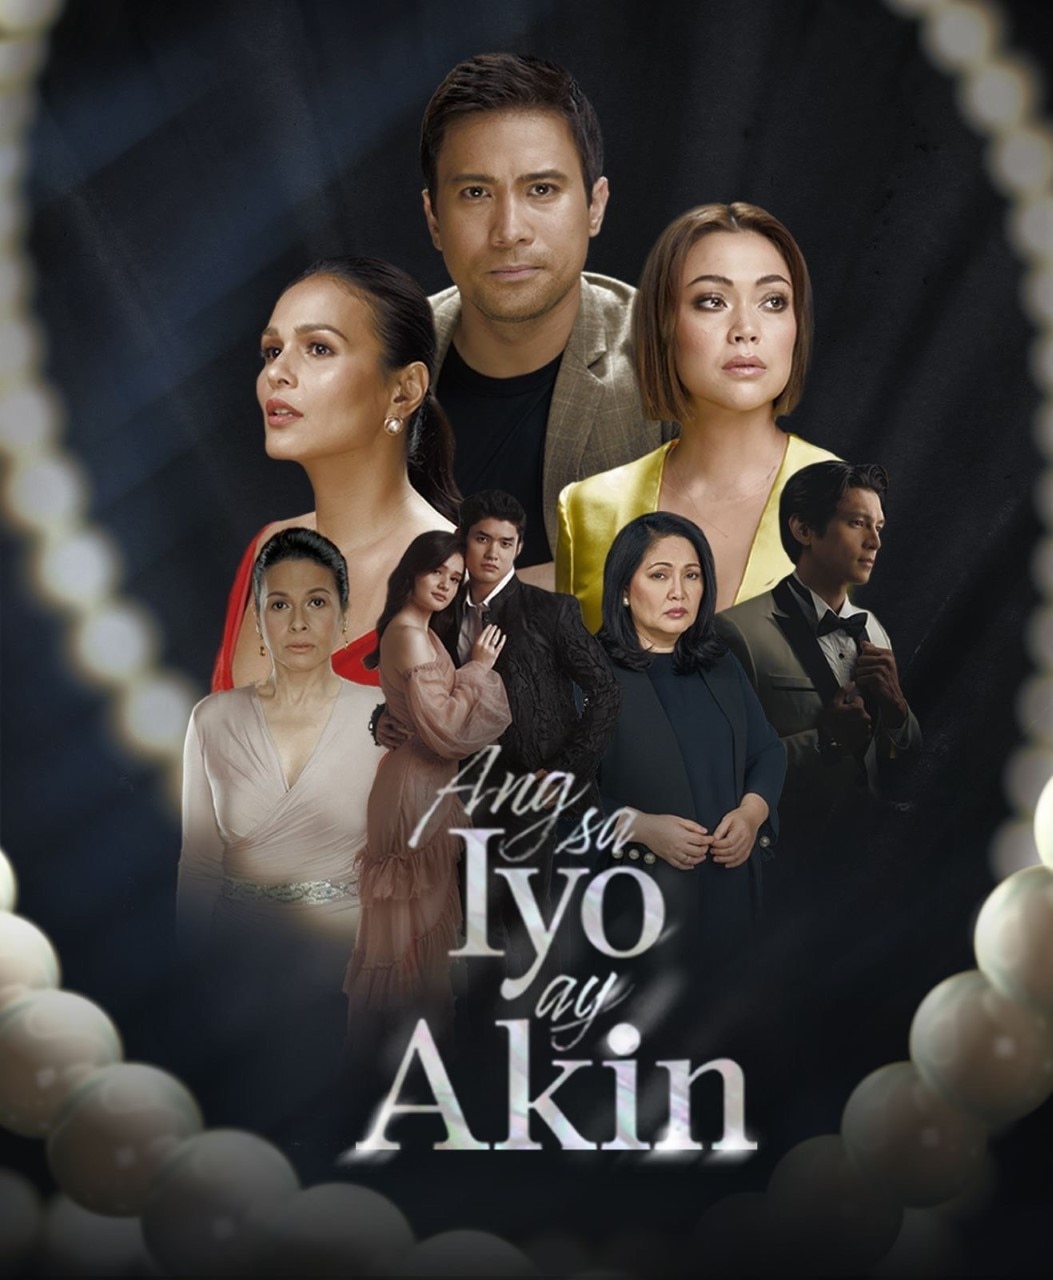 Ang Sa Iyo Ay Akin won Best Drama Series in the 19th Gawad Tanglaw